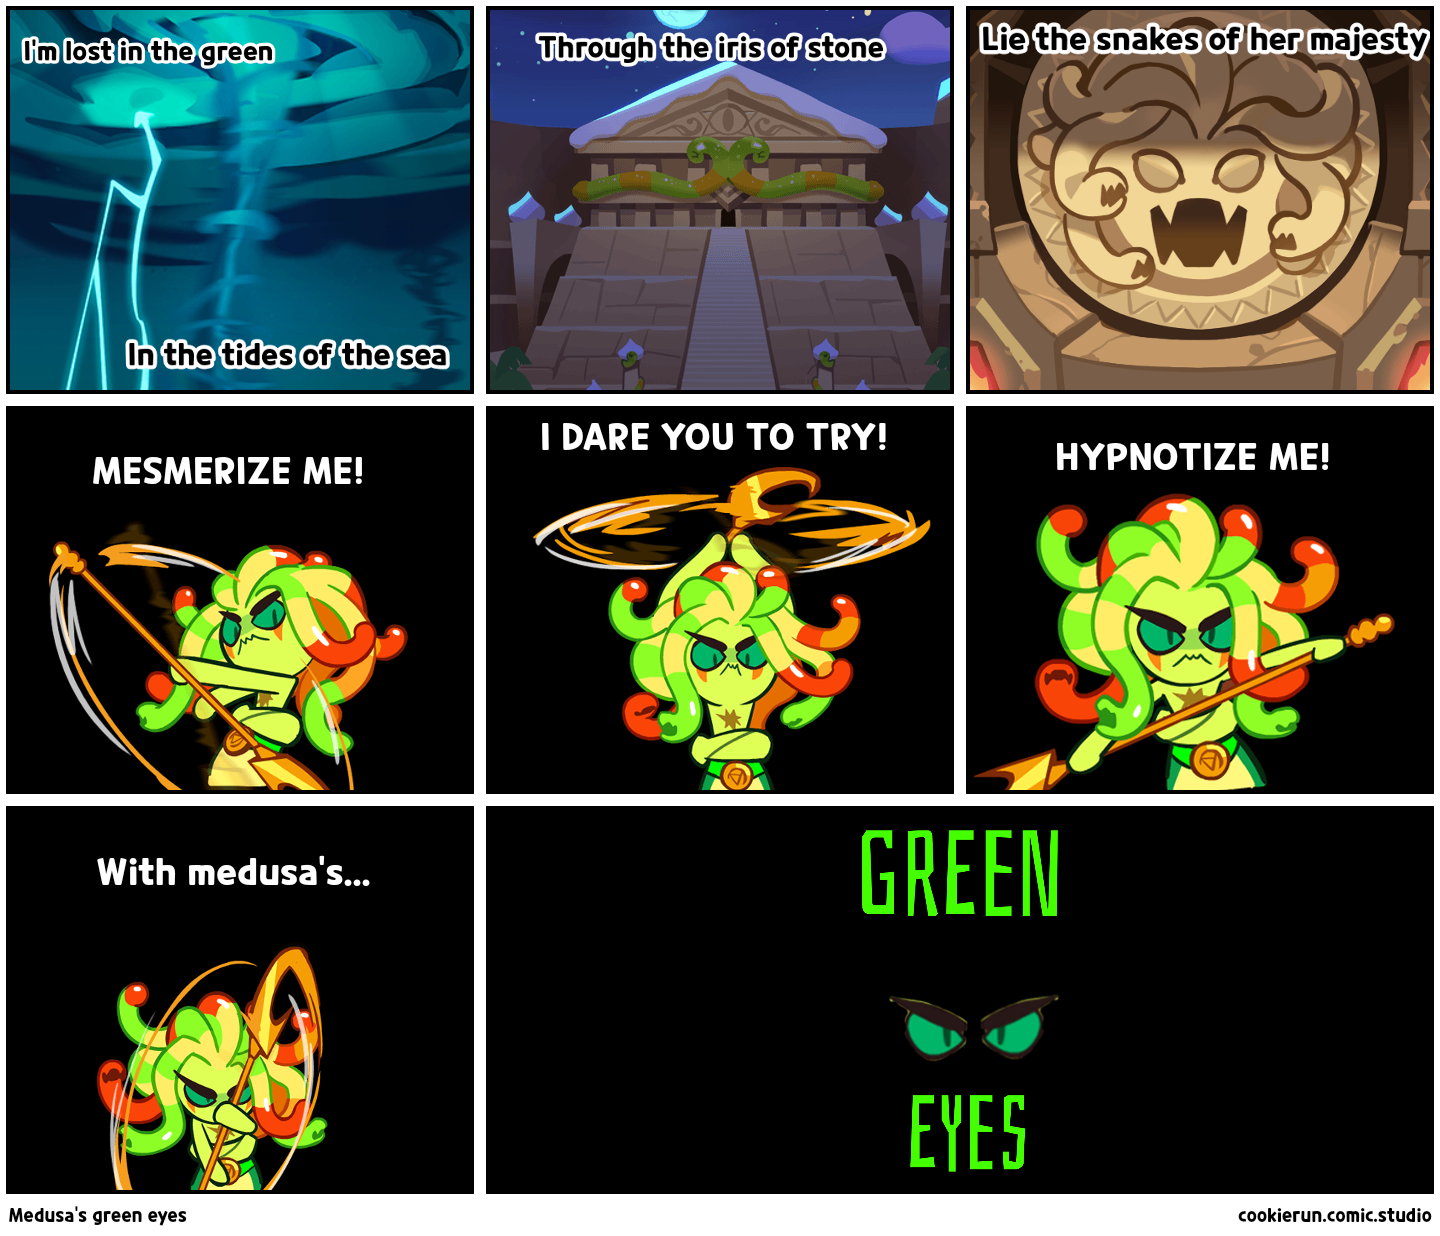 Medusa's green eyes